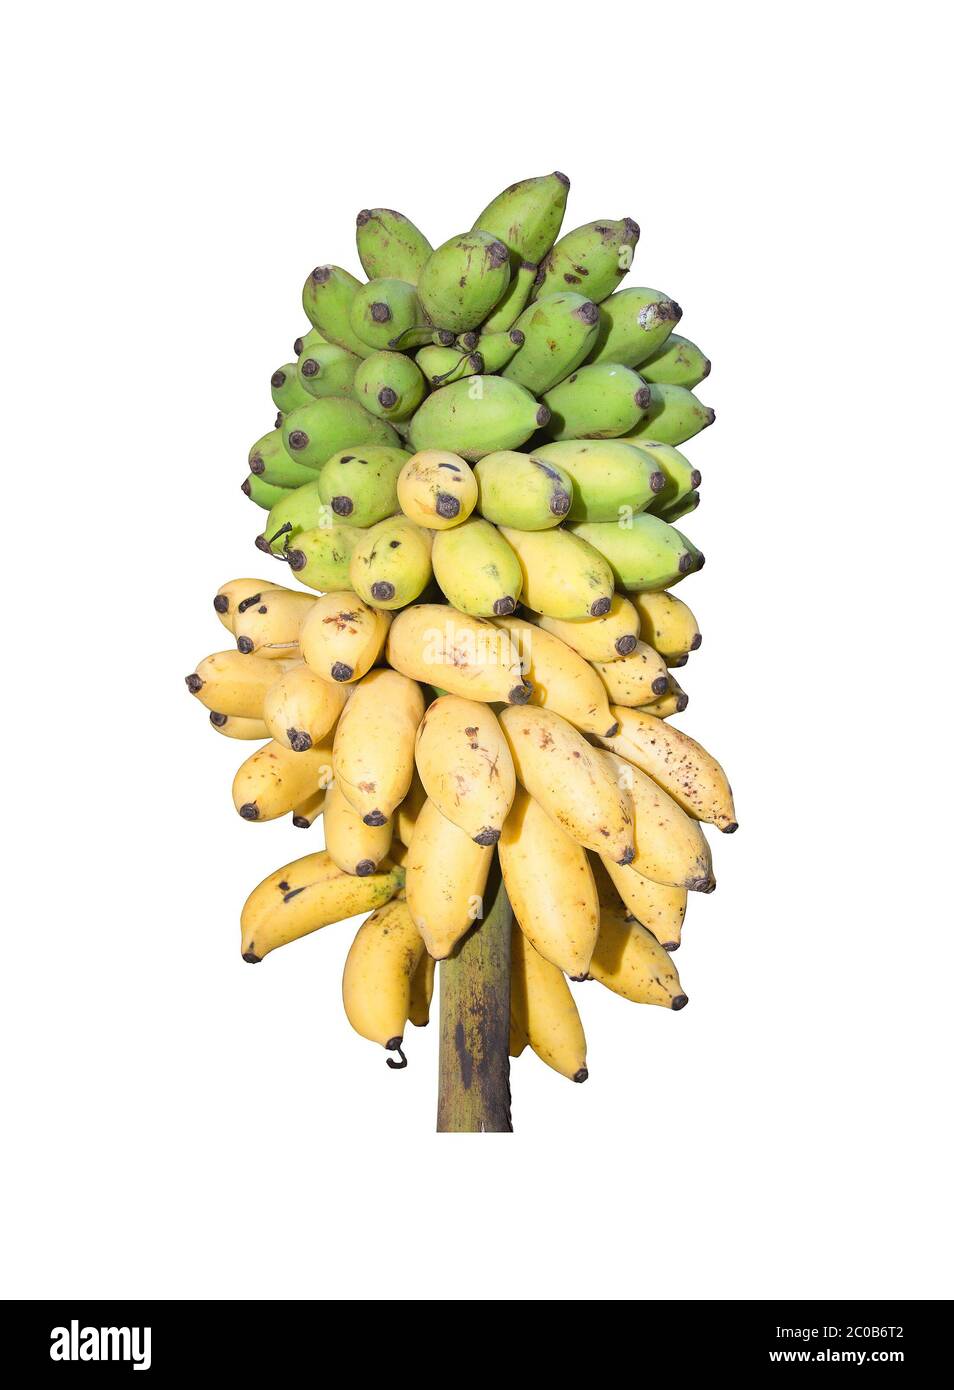 Frische Bananen reifen von grün bis gelb Stockfoto